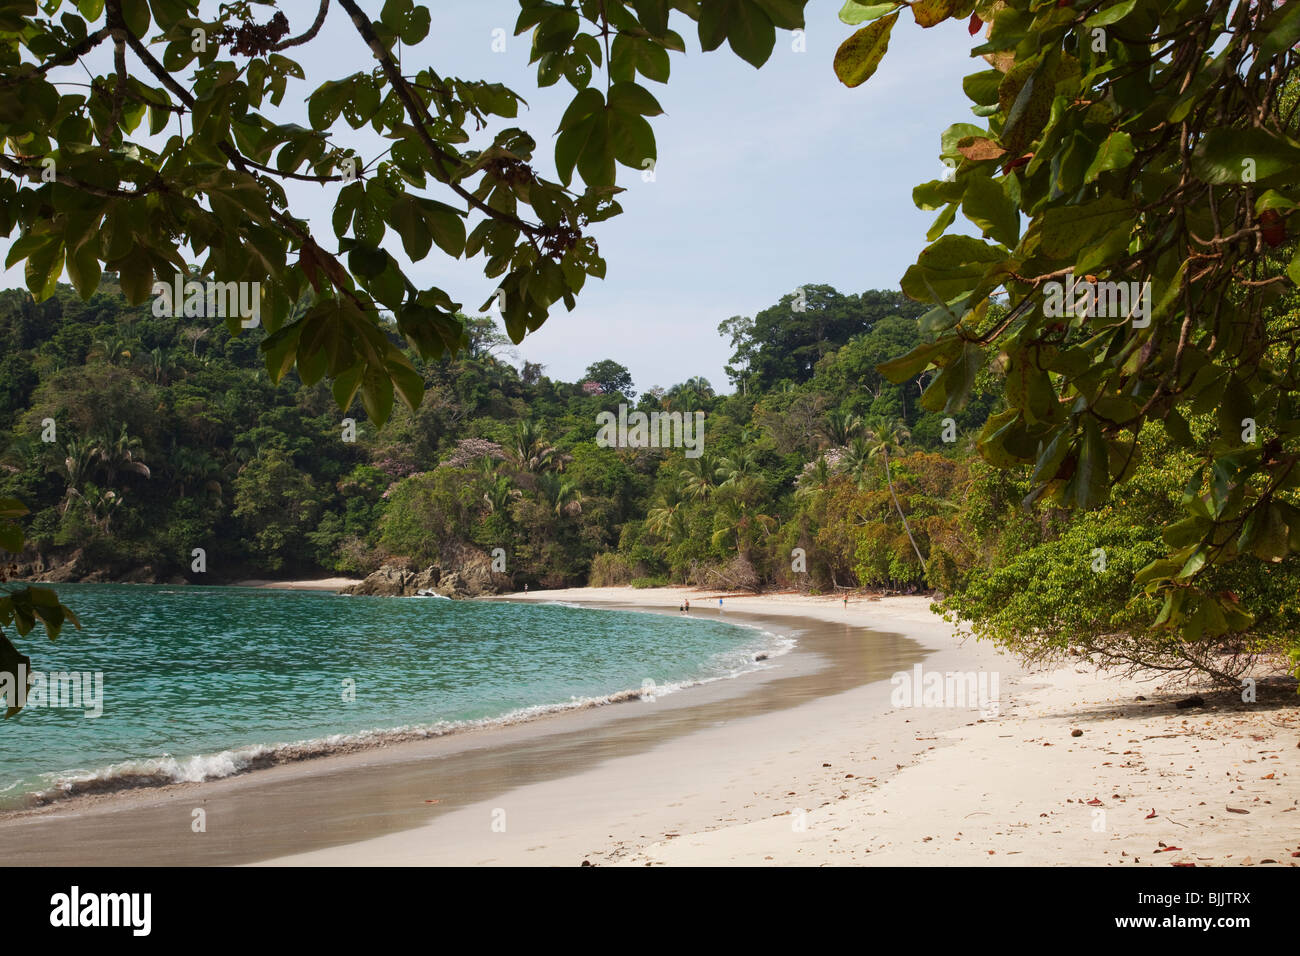 Y la bahía de playa tropical con flores de árboles de la selva tropical y la gente en la playa del parque nacional Manuel Antonio Costa Rica Foto de stock